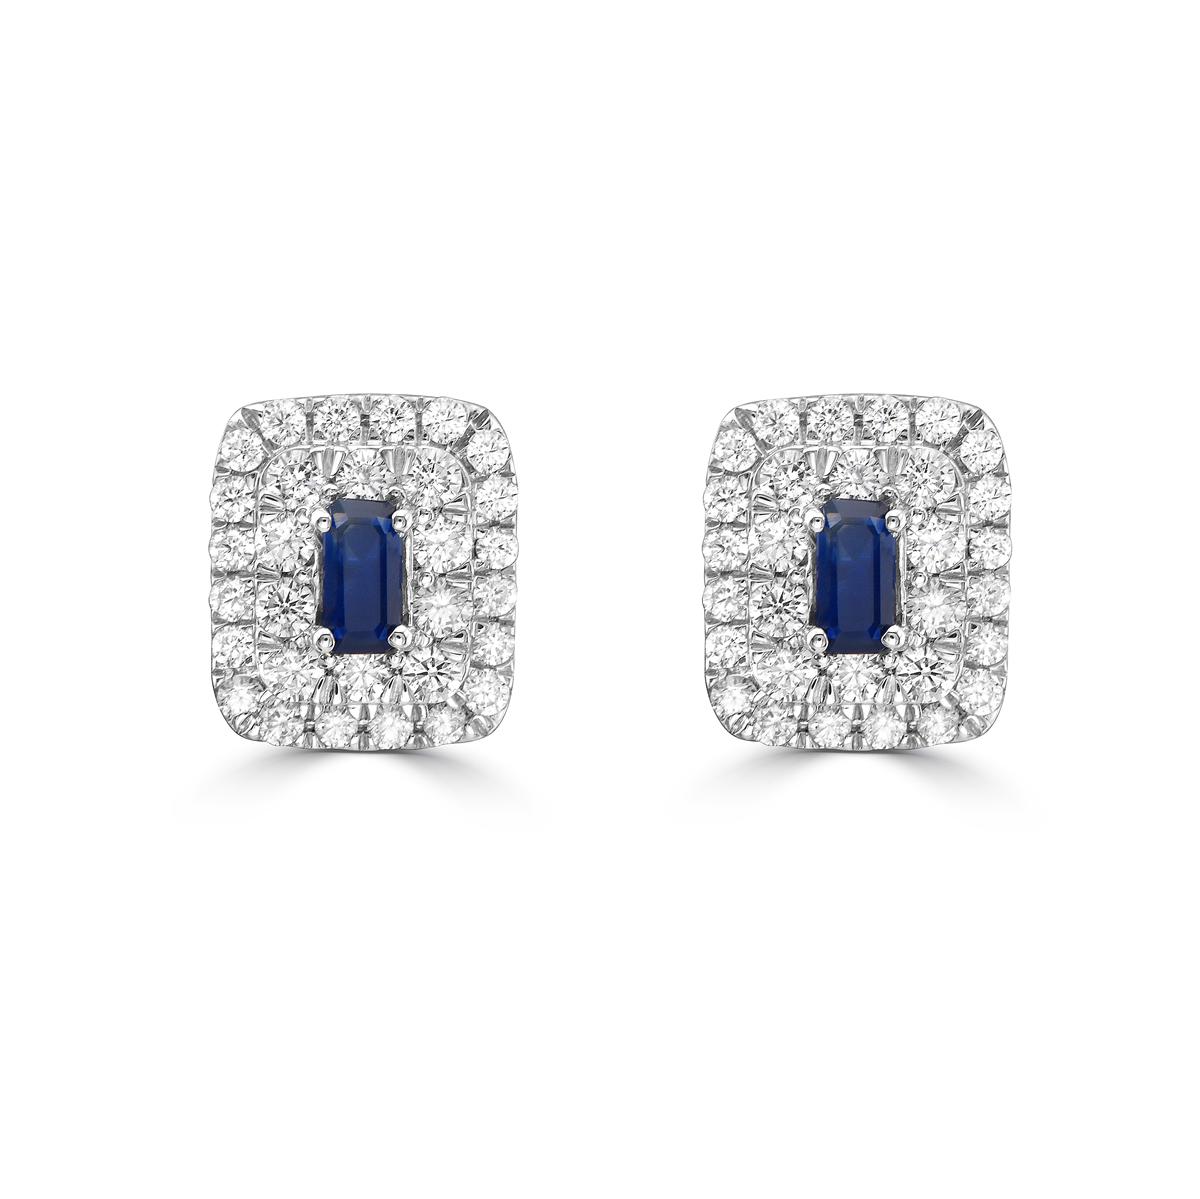 Gönnen Sie sich Luxus mit unseren Doppelhalo-Ohrsteckern mit blauem Saphir und Diamanten im Baguette-Format. Diese Ohrringe mit blauen Saphiren im Baguetteschliff strahlen Raffinesse und Exklusivität aus. Das schillernde Doppelhalo-Design mit